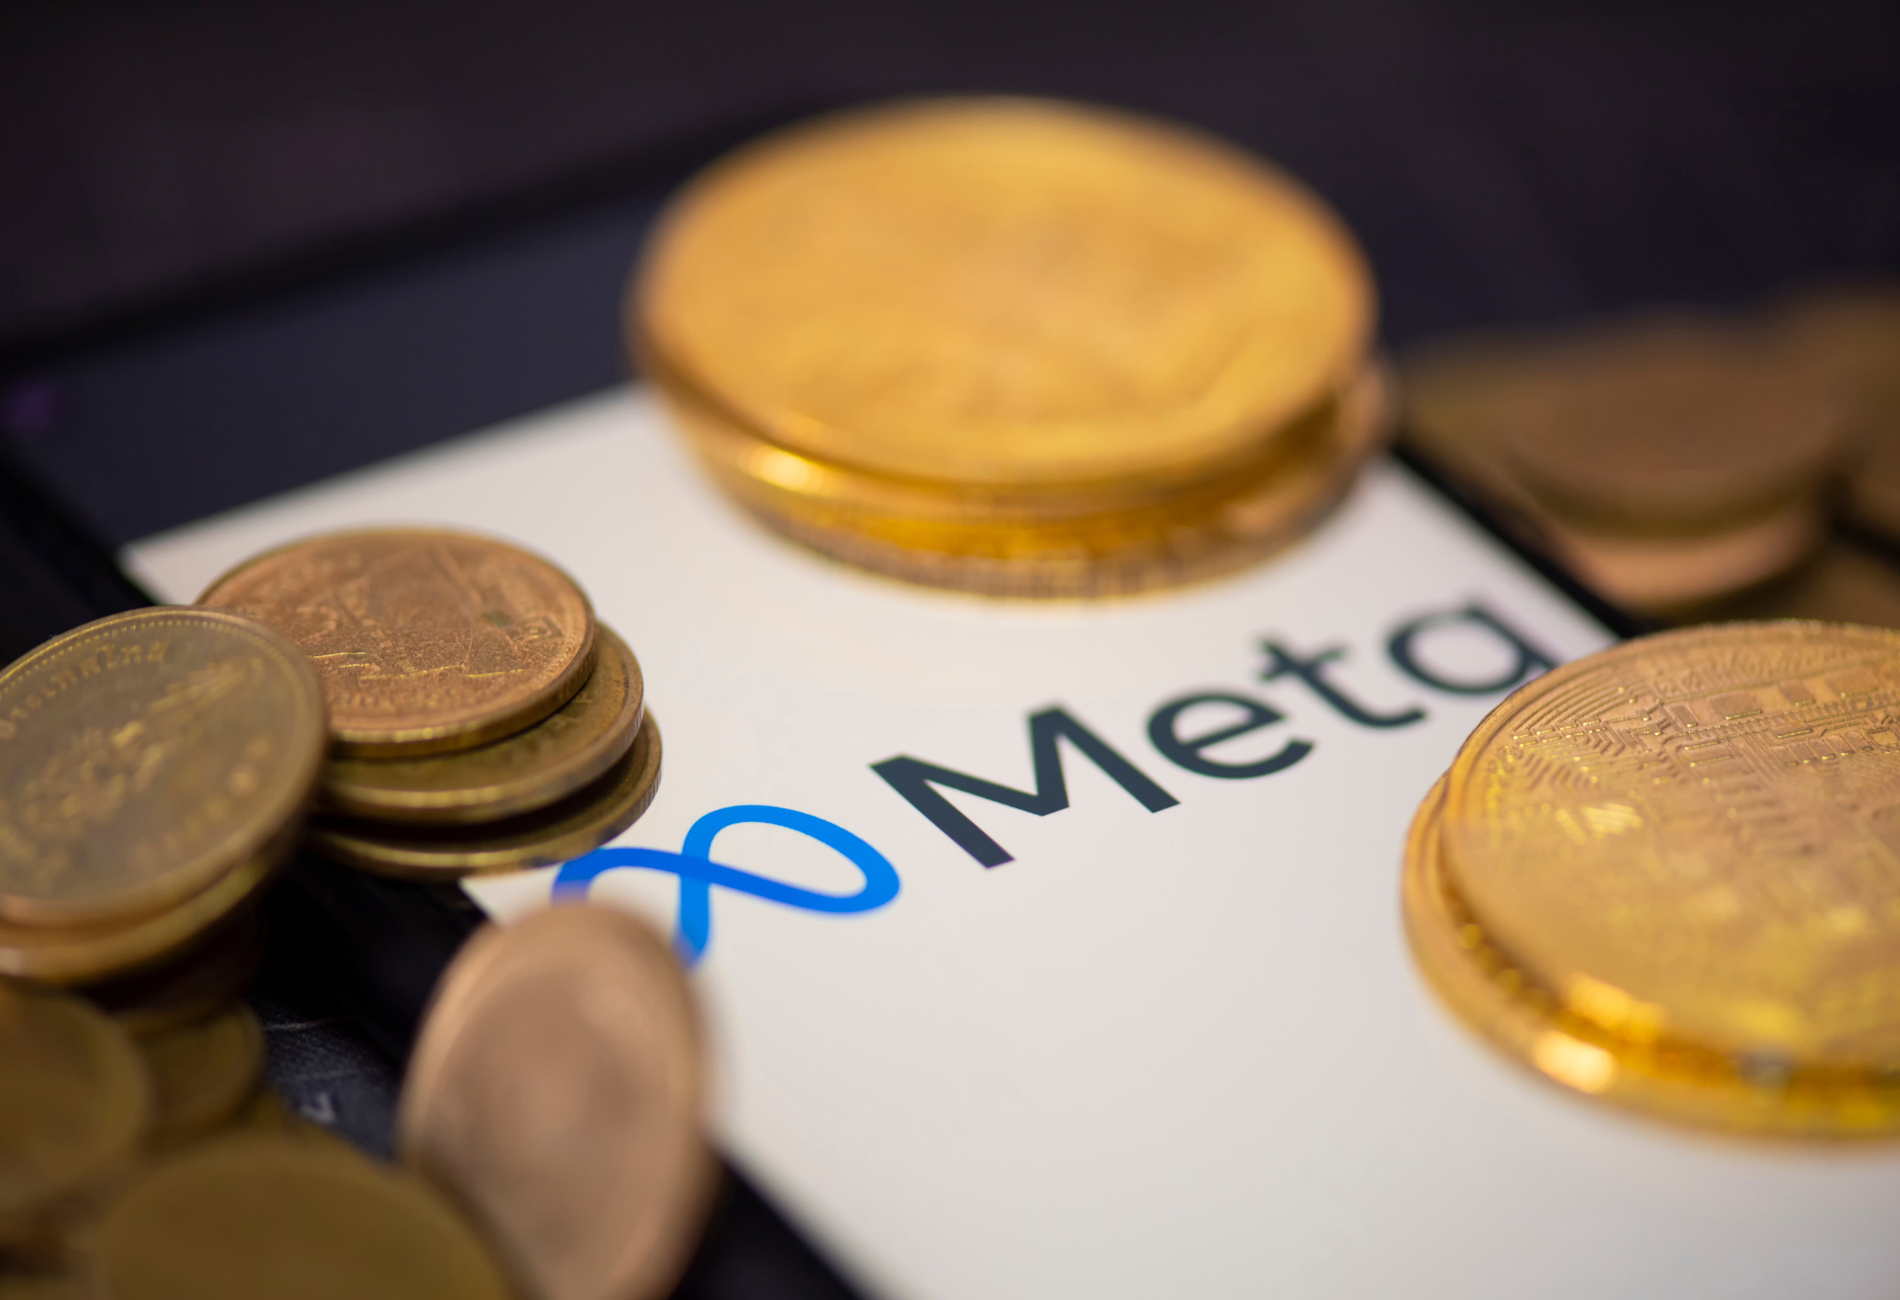 coins atop a phone screen displaying Meta's logo